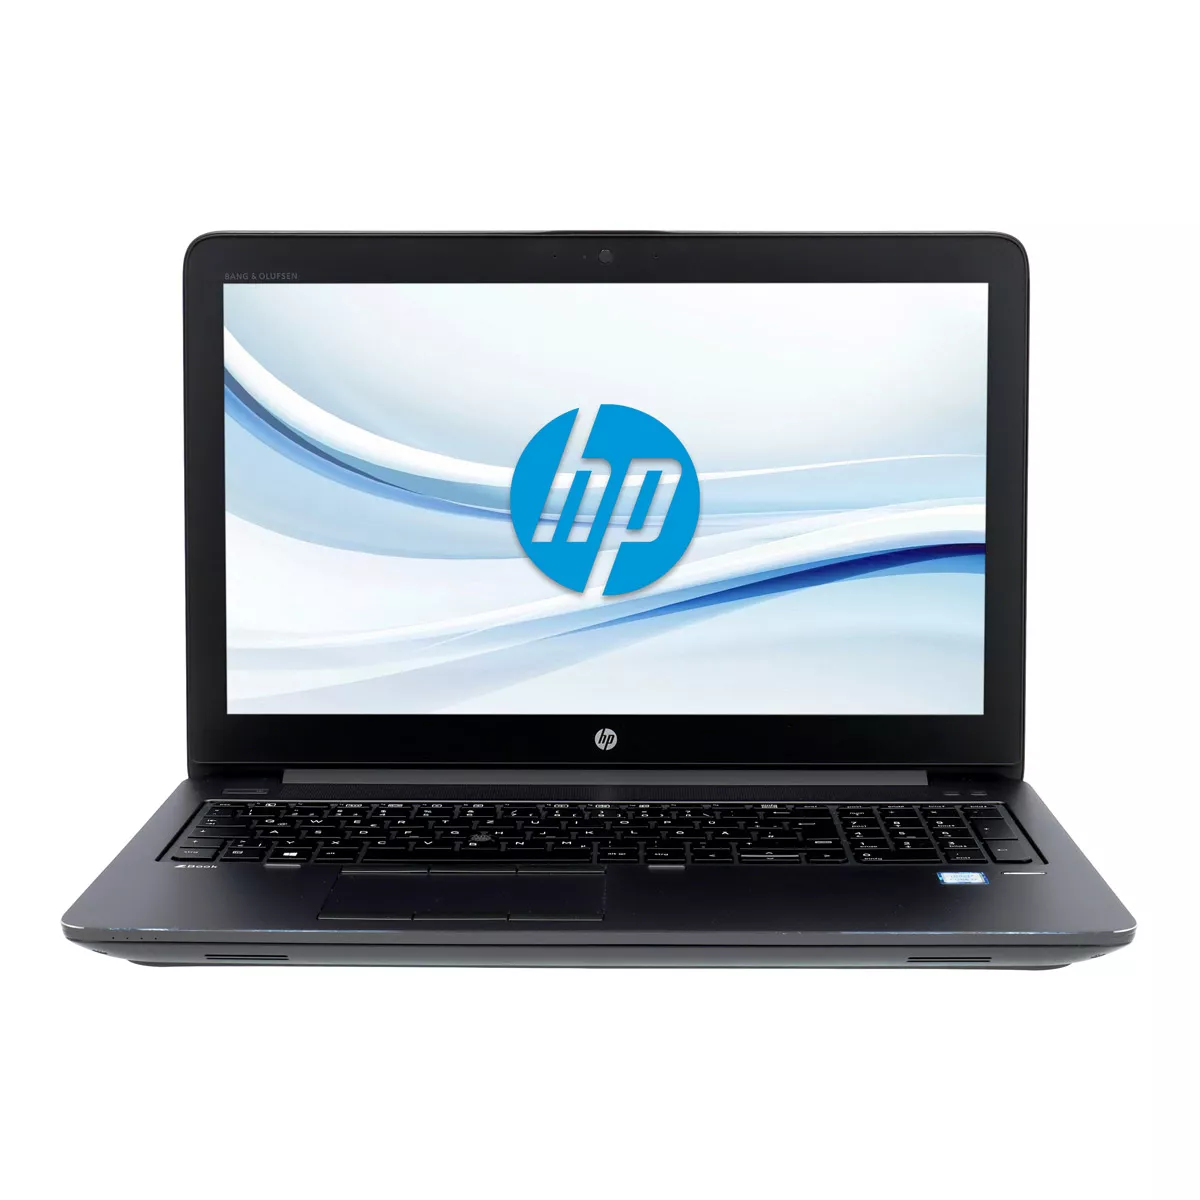 HP ZBook 15 G4 Core i7 7820HQ nVidia Quadro M2200M Full-HD 500 GB M.2 SSD Webcam A